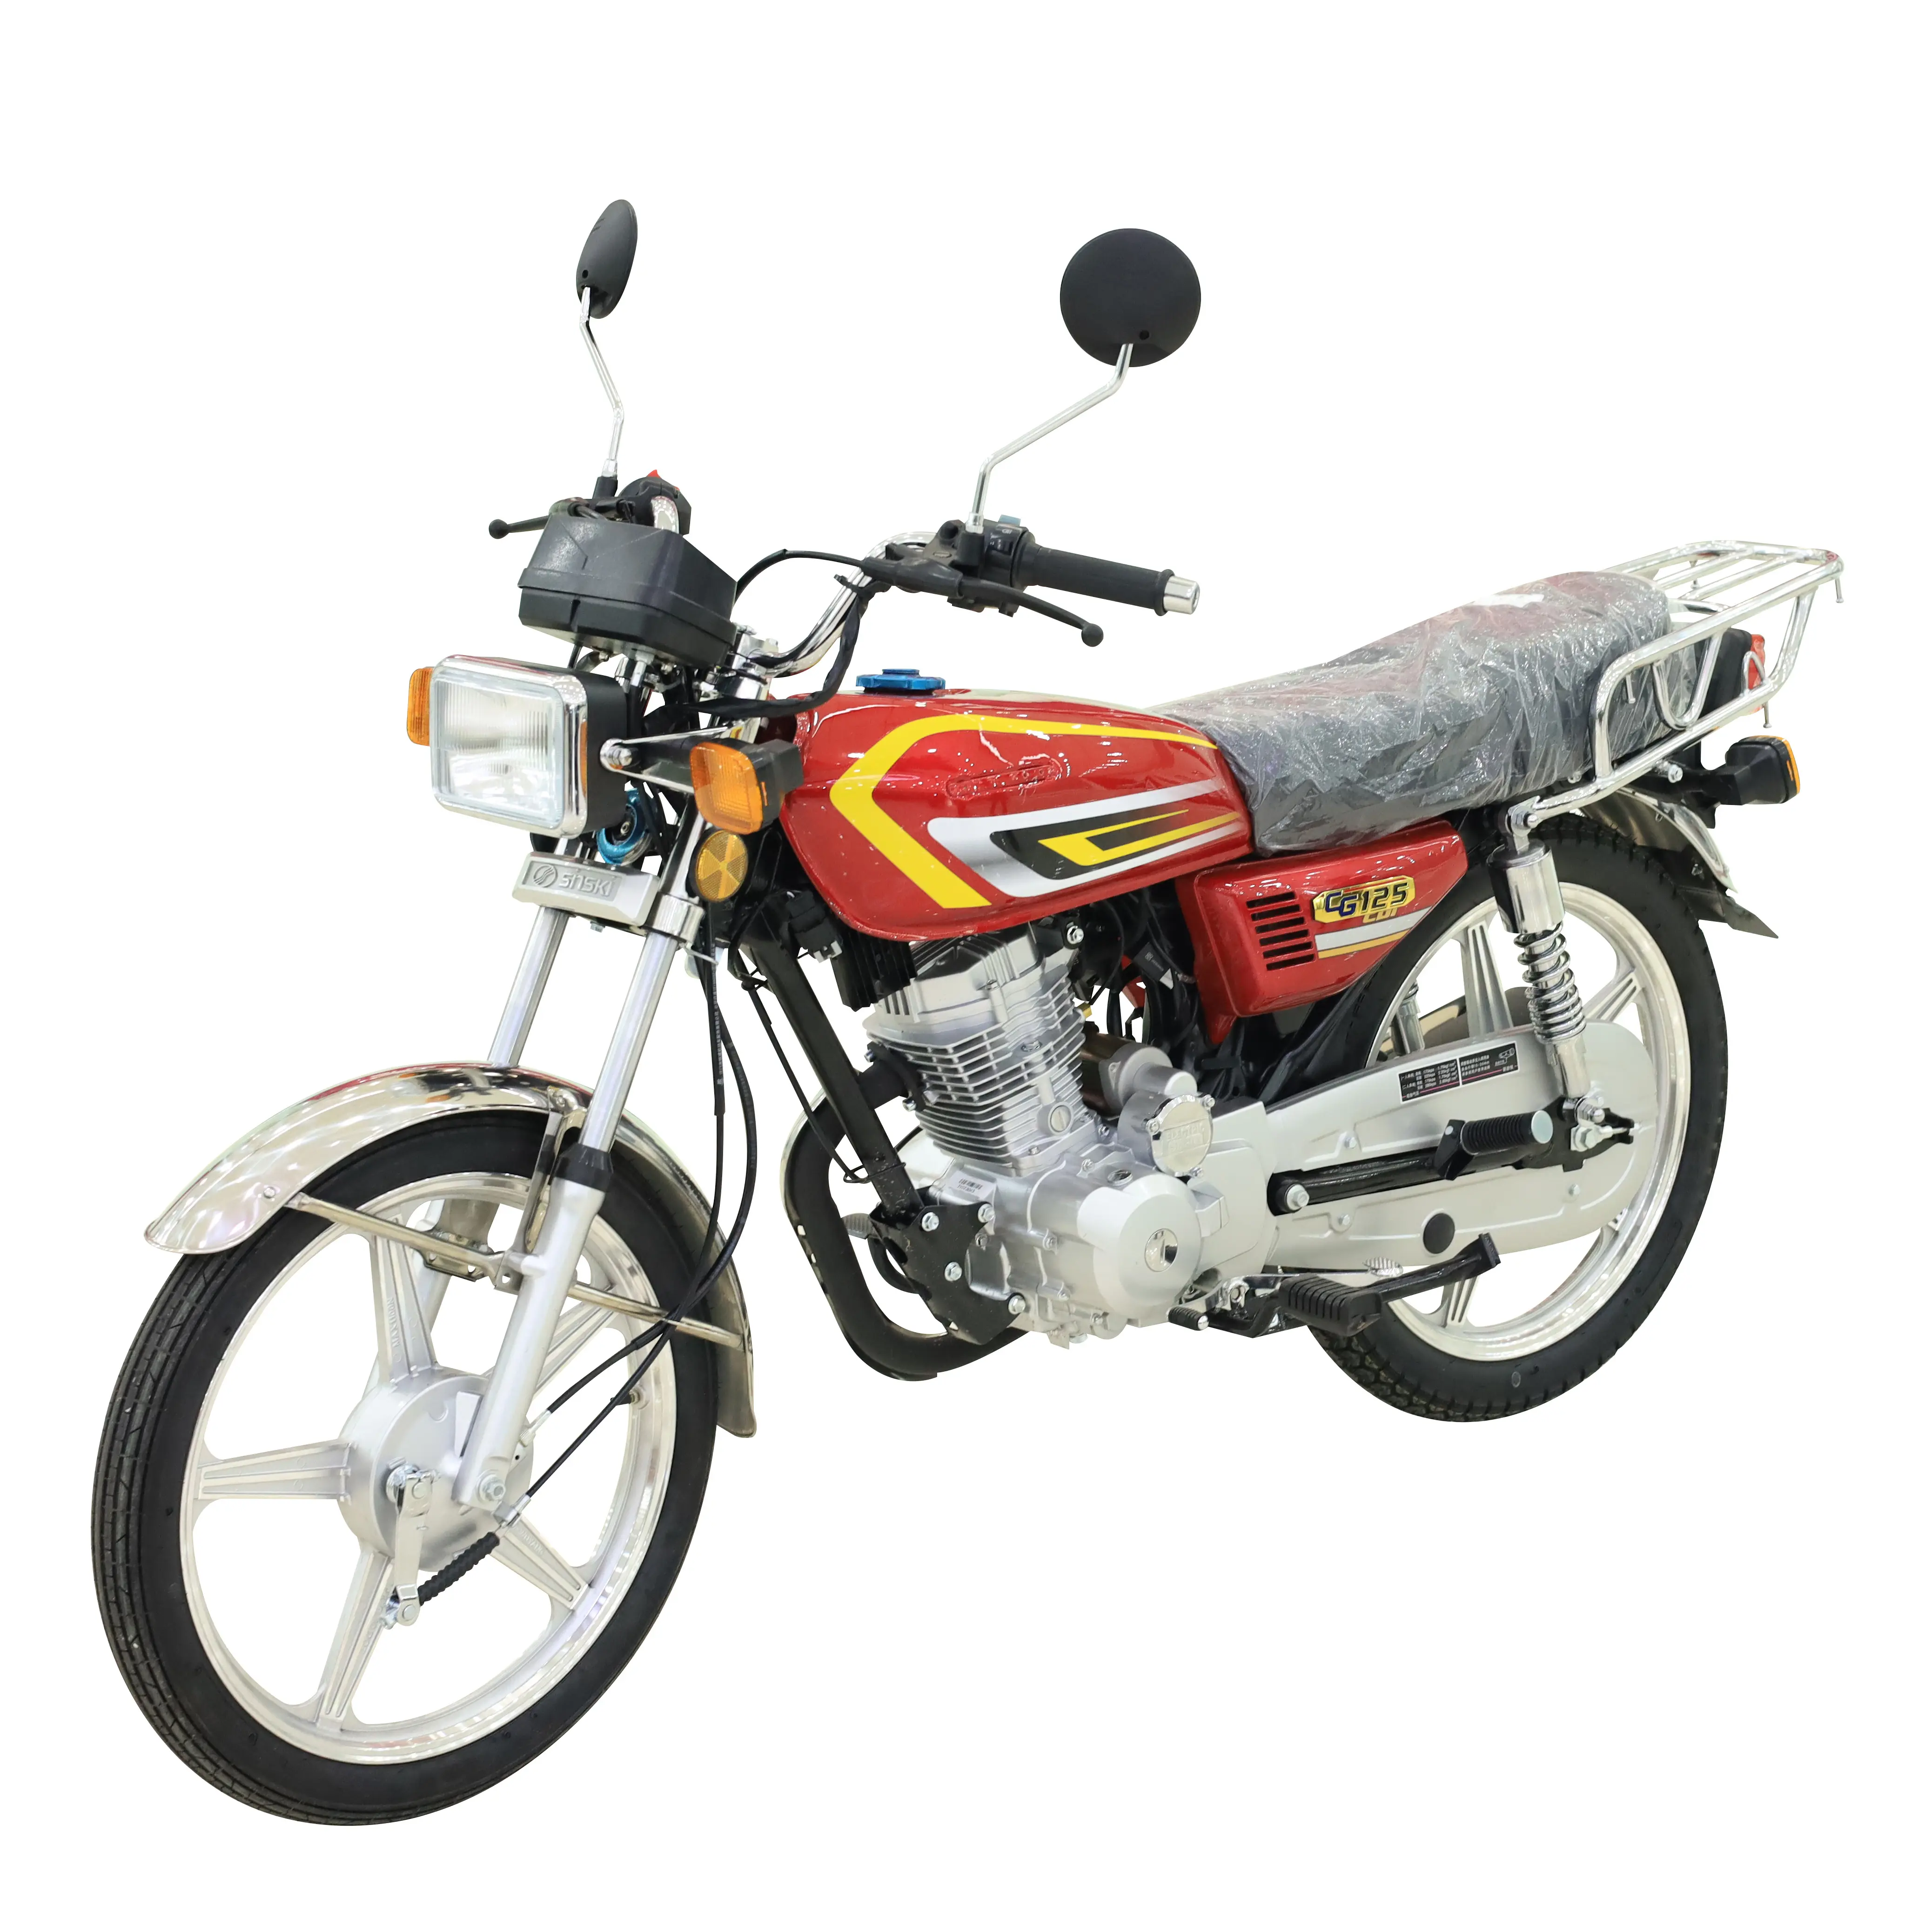 성인을위한 저렴한 인기 125cc 가스 오토바이 오프로드 오토바이 고품질 가솔린 오토바이